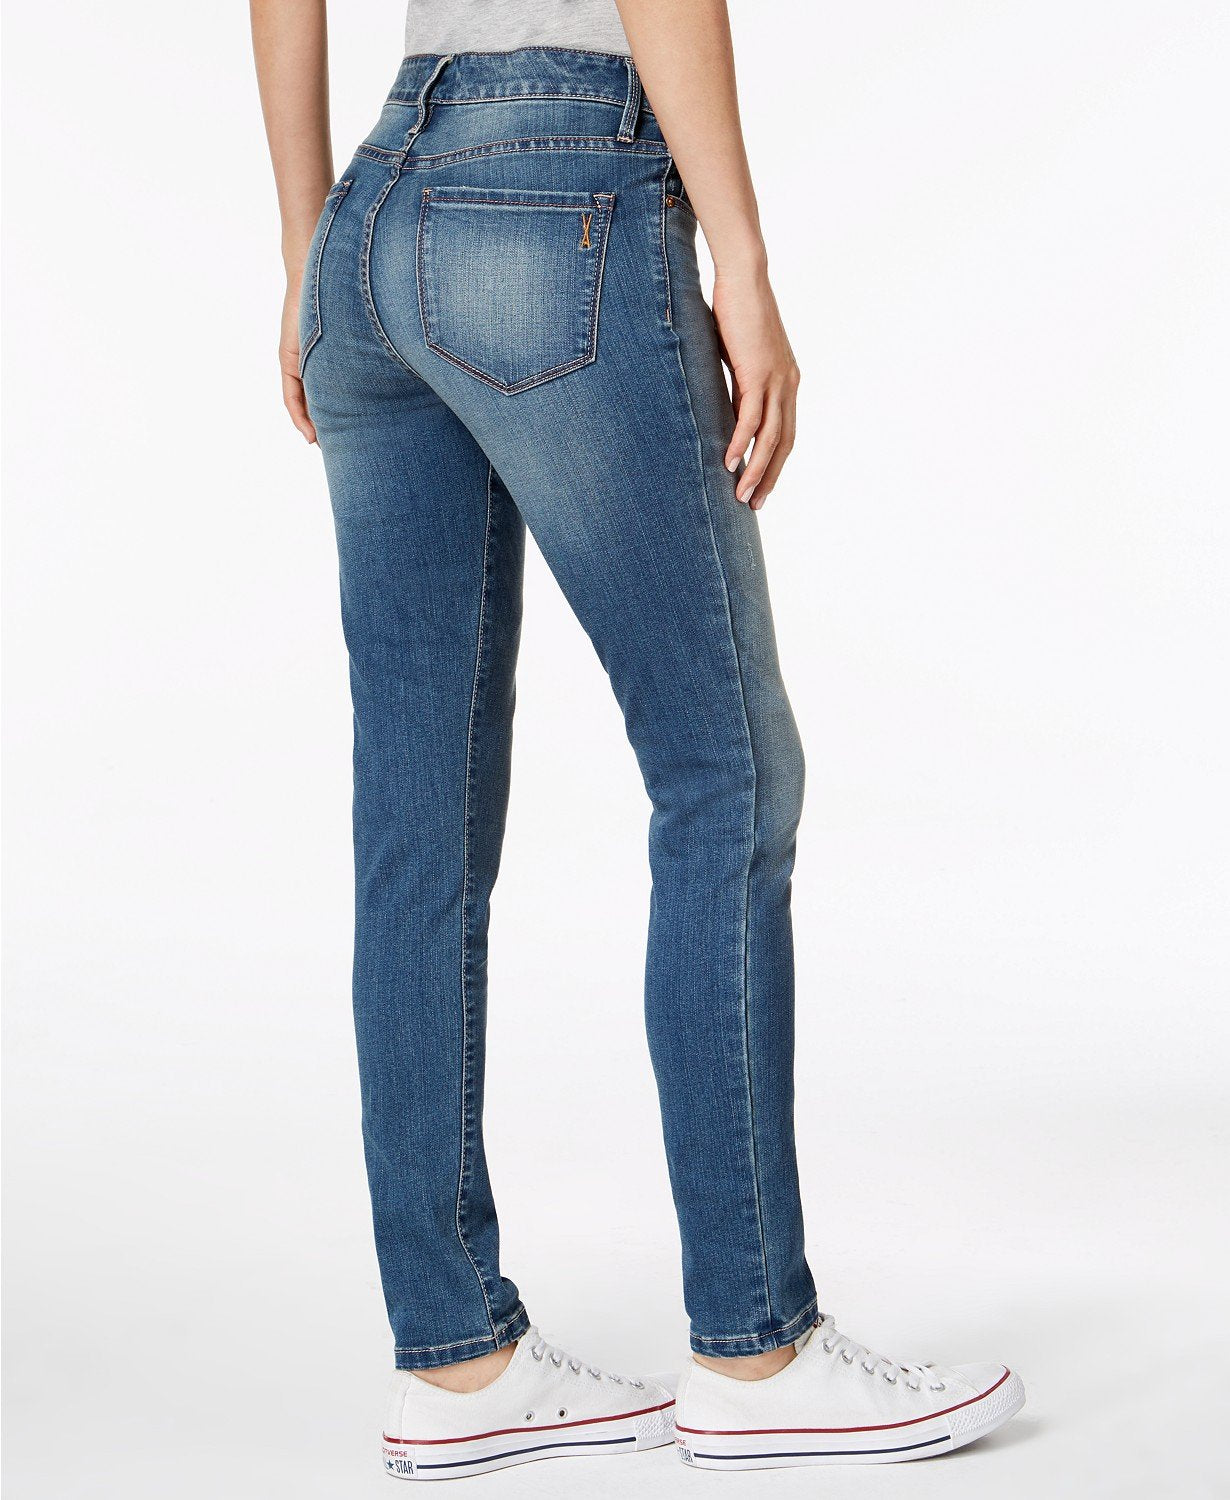 Vintage America Wonderland Mid-Rise Skinny Jeans